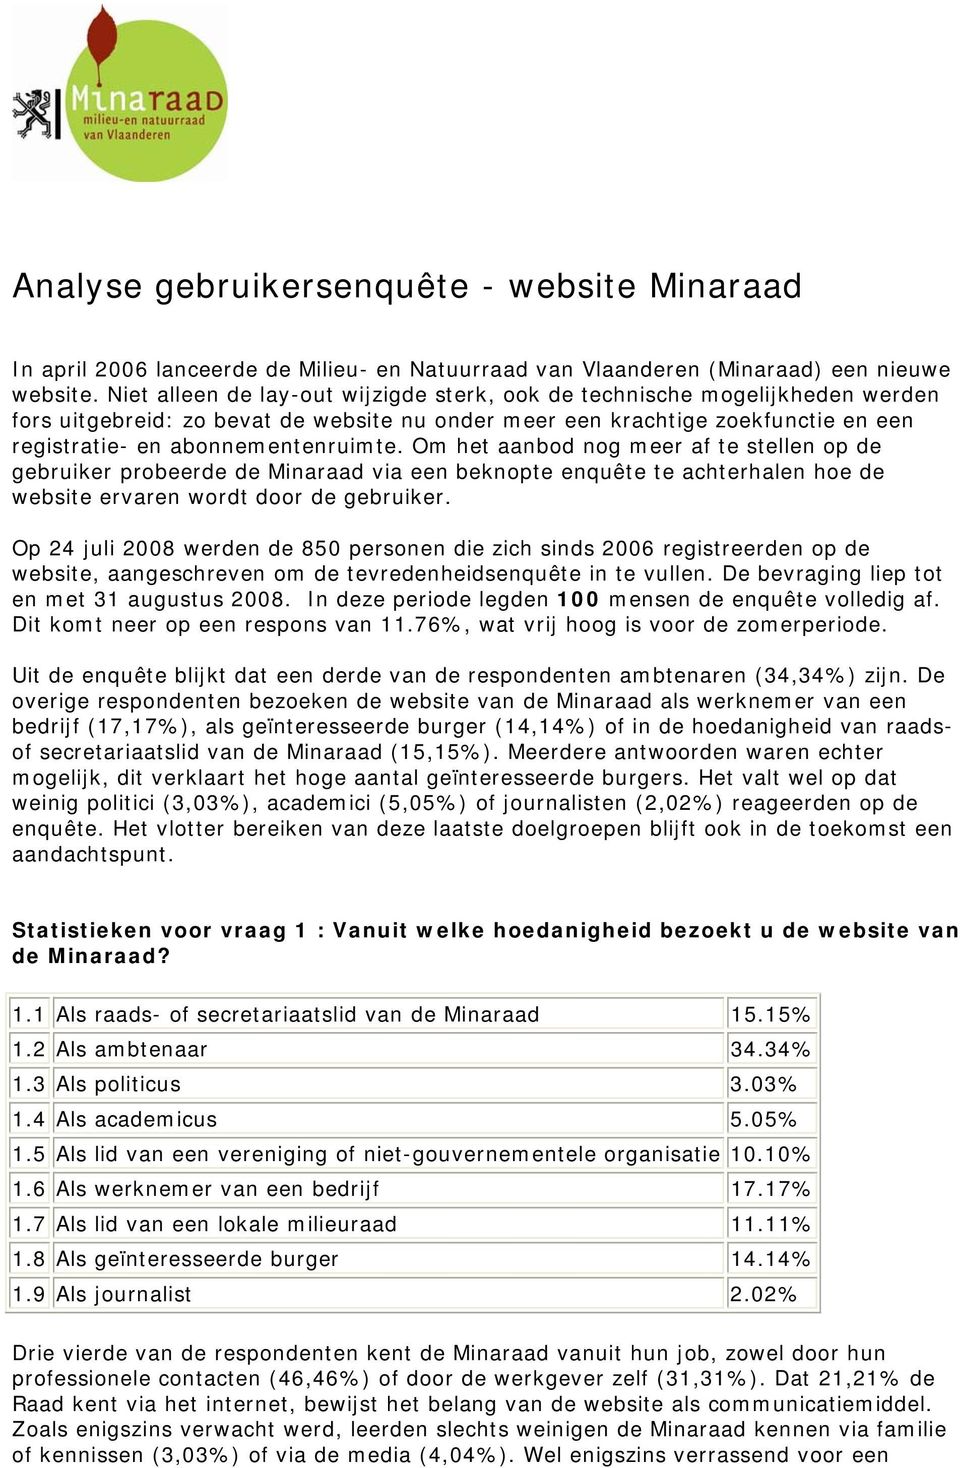 Om het aanbod nog meer af te stellen op de gebruiker probeerde de Minaraad via een beknopte enquête te achterhalen hoe de website ervaren wordt door de gebruiker.